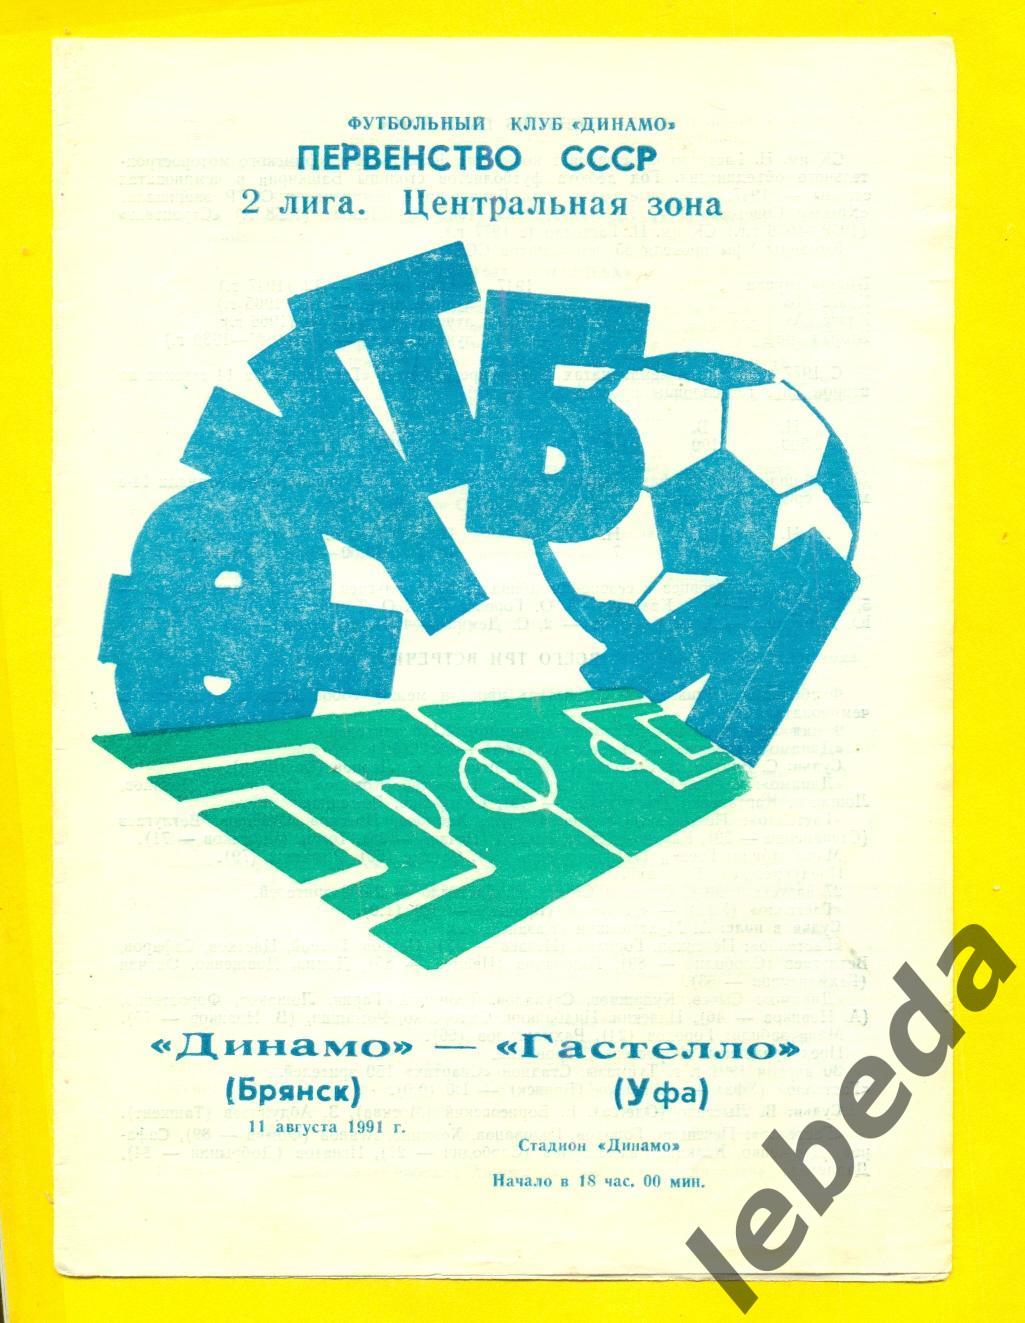 Динамо Брянск - Гастелло Уфа - 1991 г.(11.08.91.)